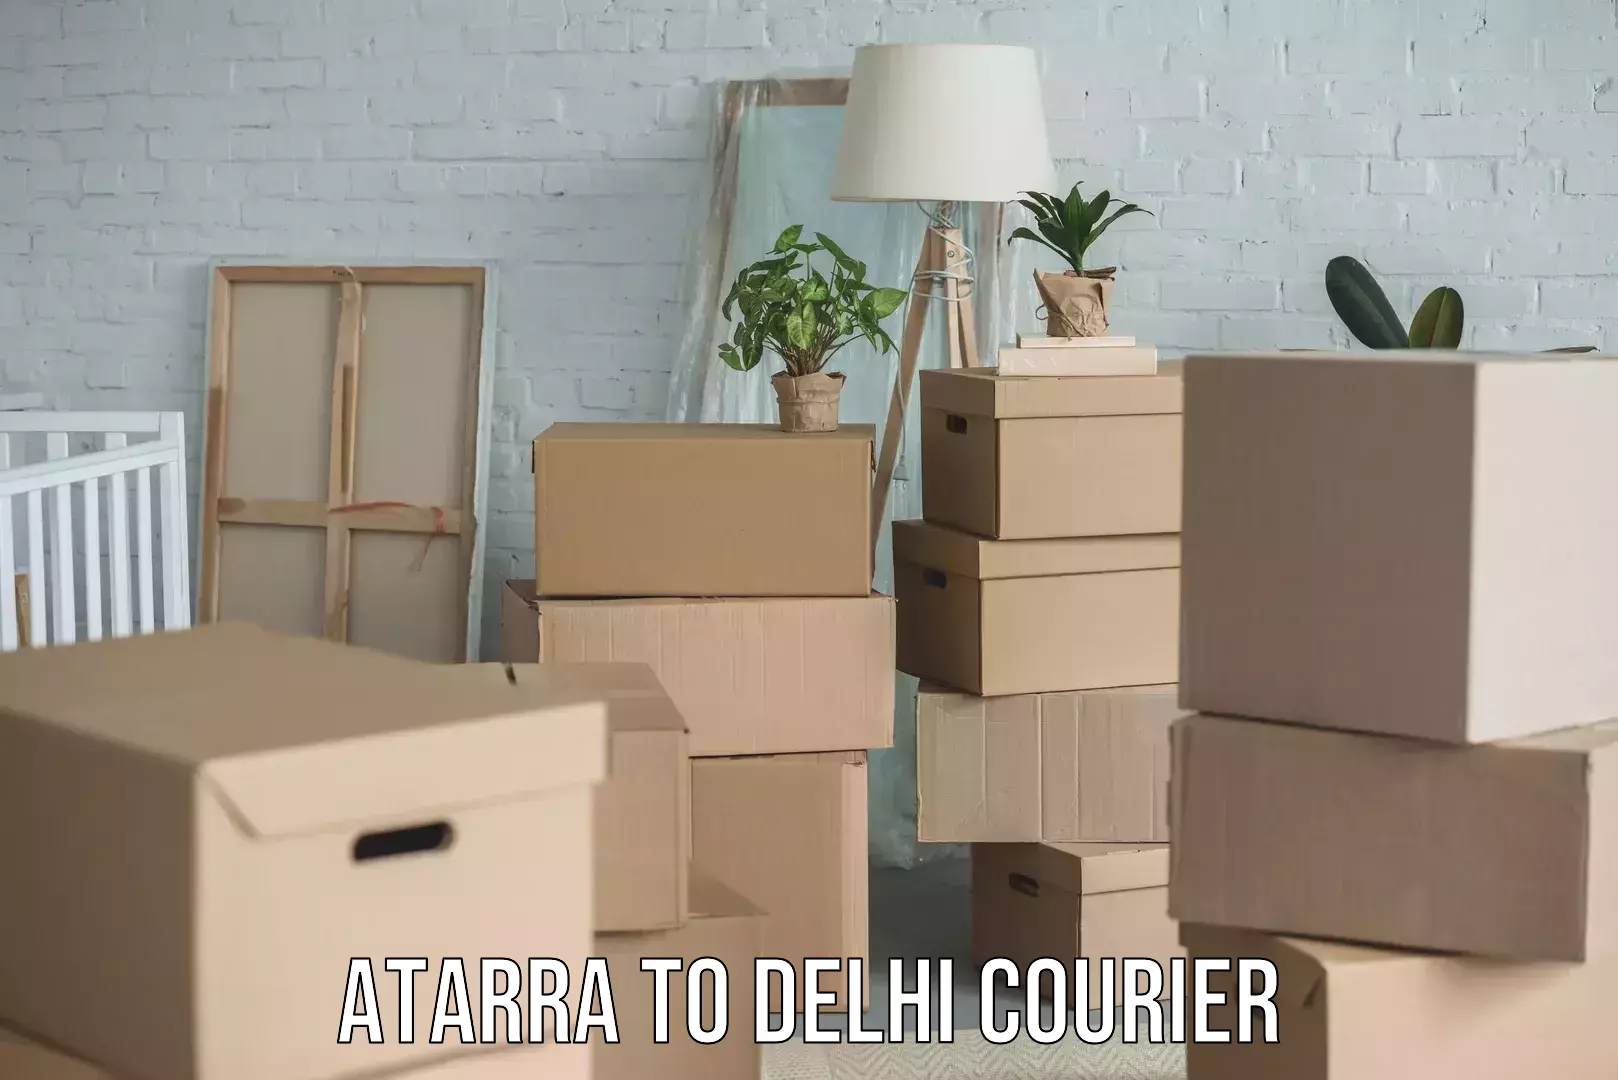 Rural area delivery Atarra to Delhi